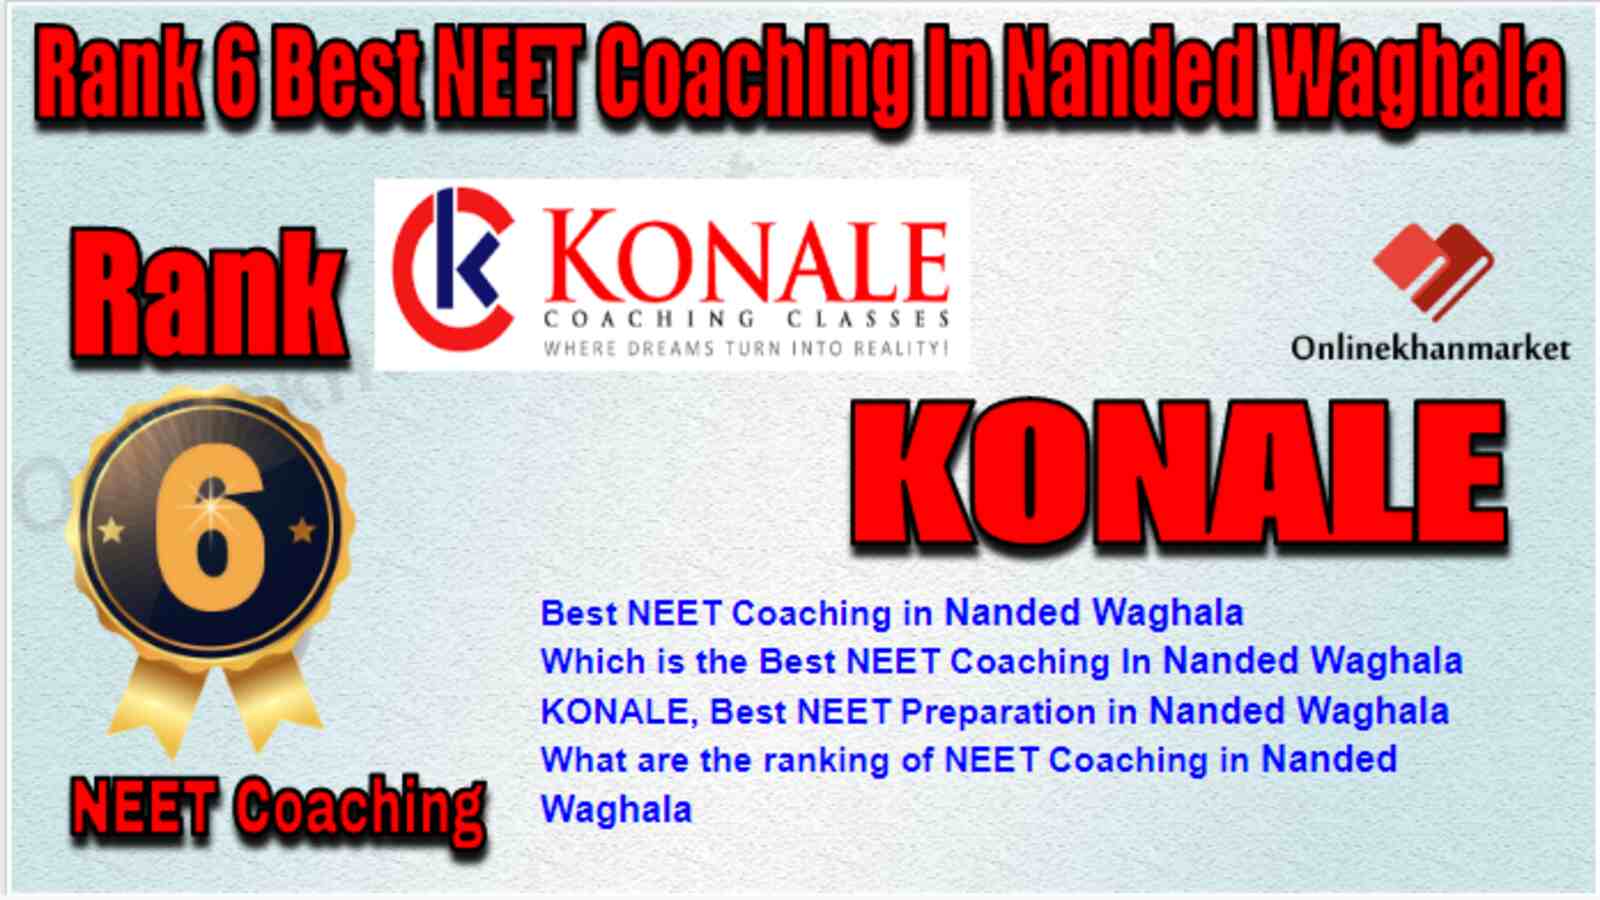 Rank 6 Best NEET Coaching in Nanded Waghala